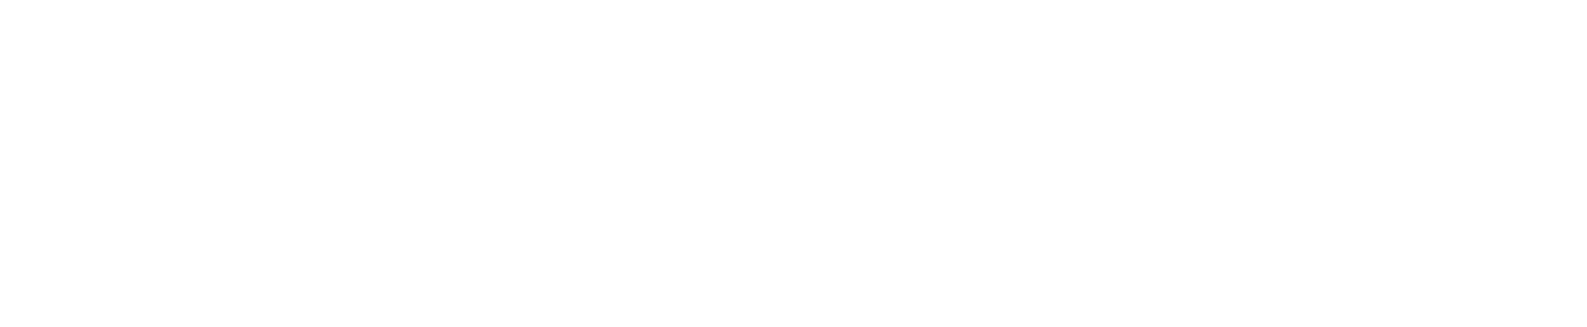 National Grid logo large for dark backgrounds (transparent PNG)